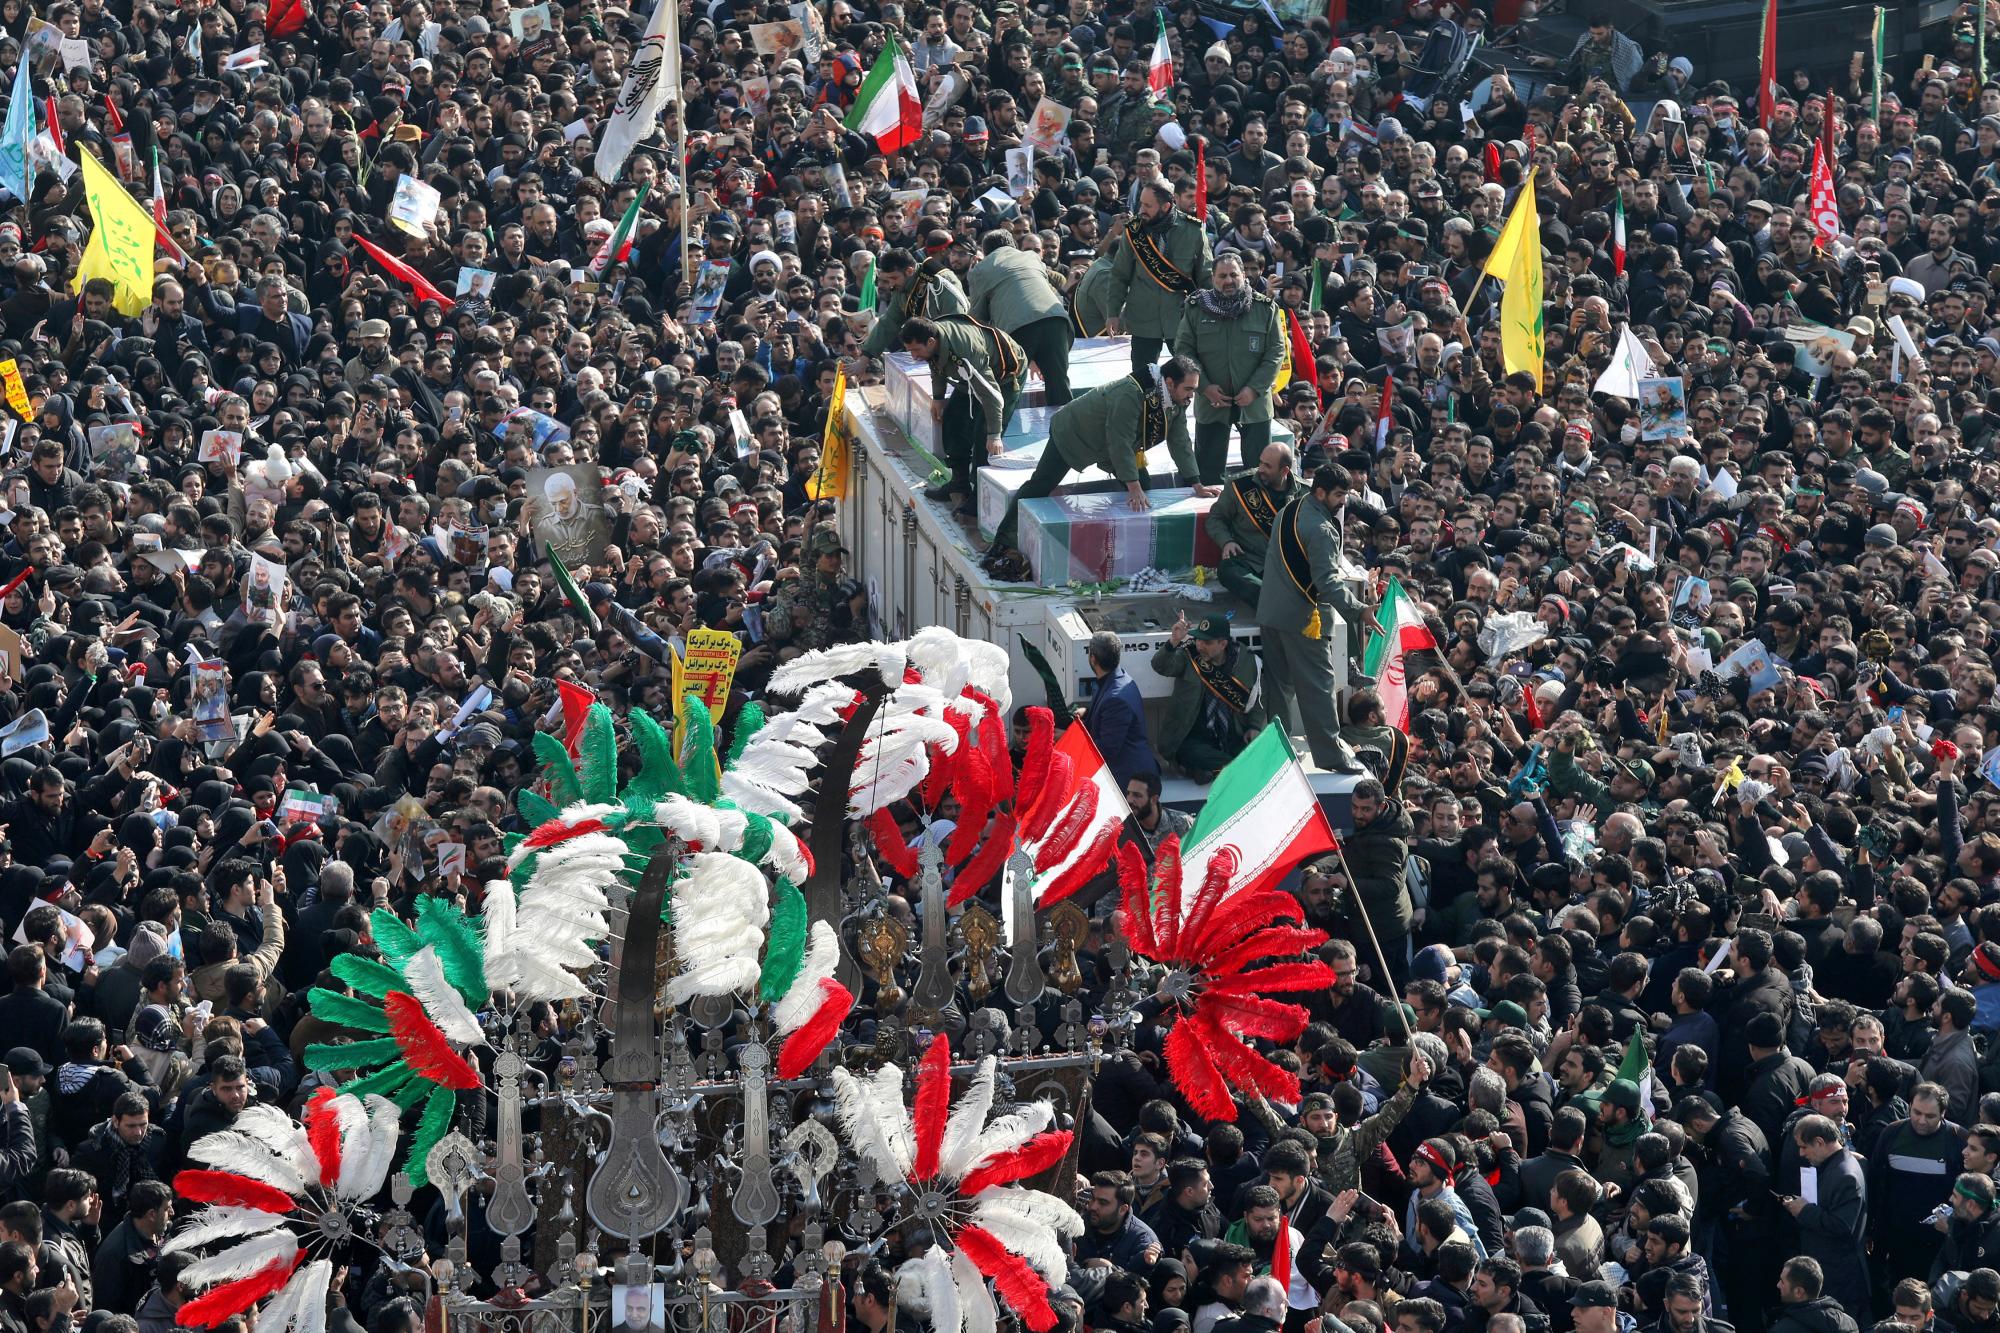 Los ataúdes del general Qassem Soleimani y otros que fueron asesinados en Irak por un ataque con aviones no tripulados estadounidenses, son transportados en un camión rodeado de dolientes durante una procesión fúnebre en la plaza Enqelab-e-Eslami (Revolución Islámica) en Teherán, Irán, el lunes. 6 de enero de 2020. Las procesiones marcan la primera vez que Irán honra a un hombre soltero con una ceremonia en varias ciudades. Ni siquiera el ayatolá Ruhollah Khomeini, quien fundó la República Islámica, recibió tal procesión con su muerte en 1989. Soleimani permanecerá el lunes en el estado en la famosa mezquita Musalla de Teherán como lo hizo el líder revolucionario antes que él. (Foto AP / Ebrahim Noroozi)